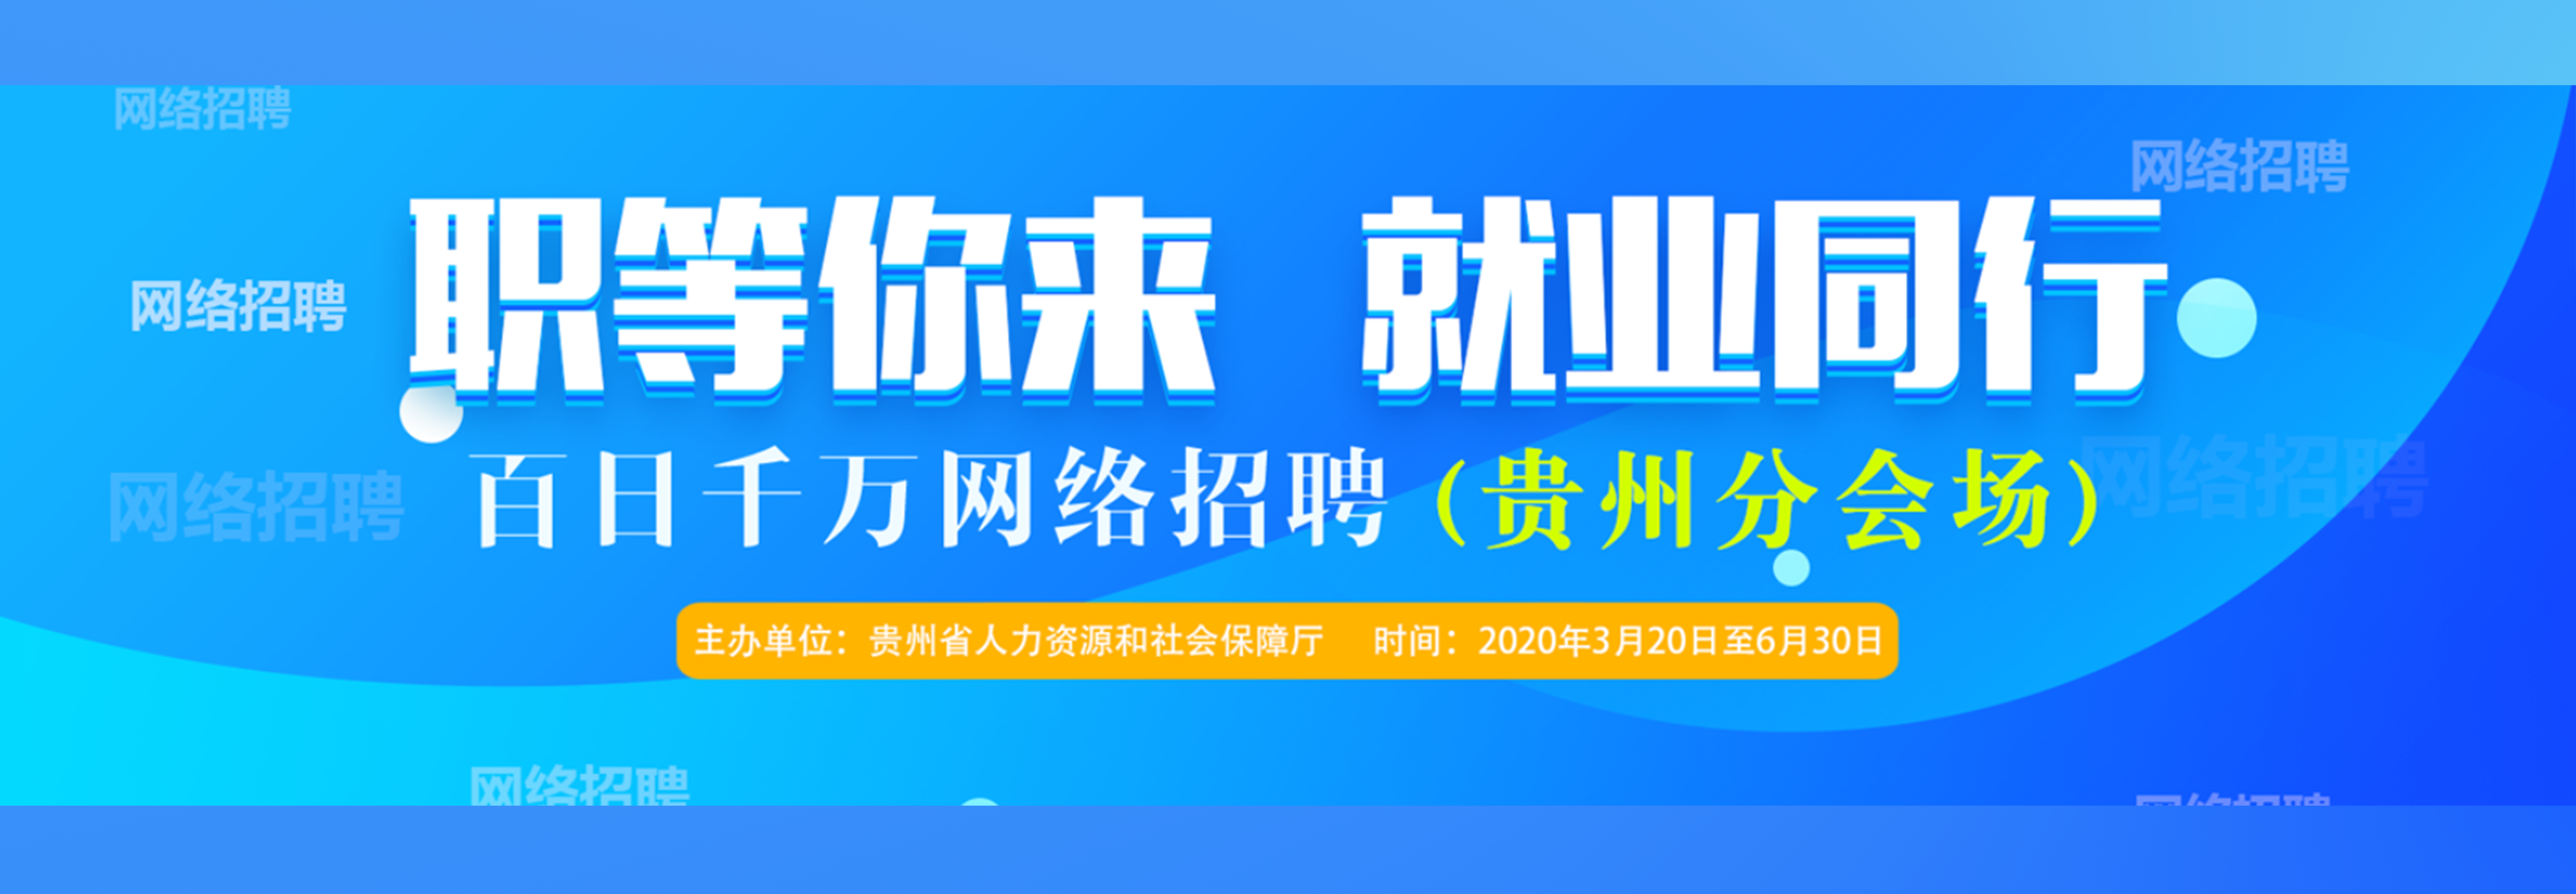 贵州省2020年上半年校园网上专场招聘会.png